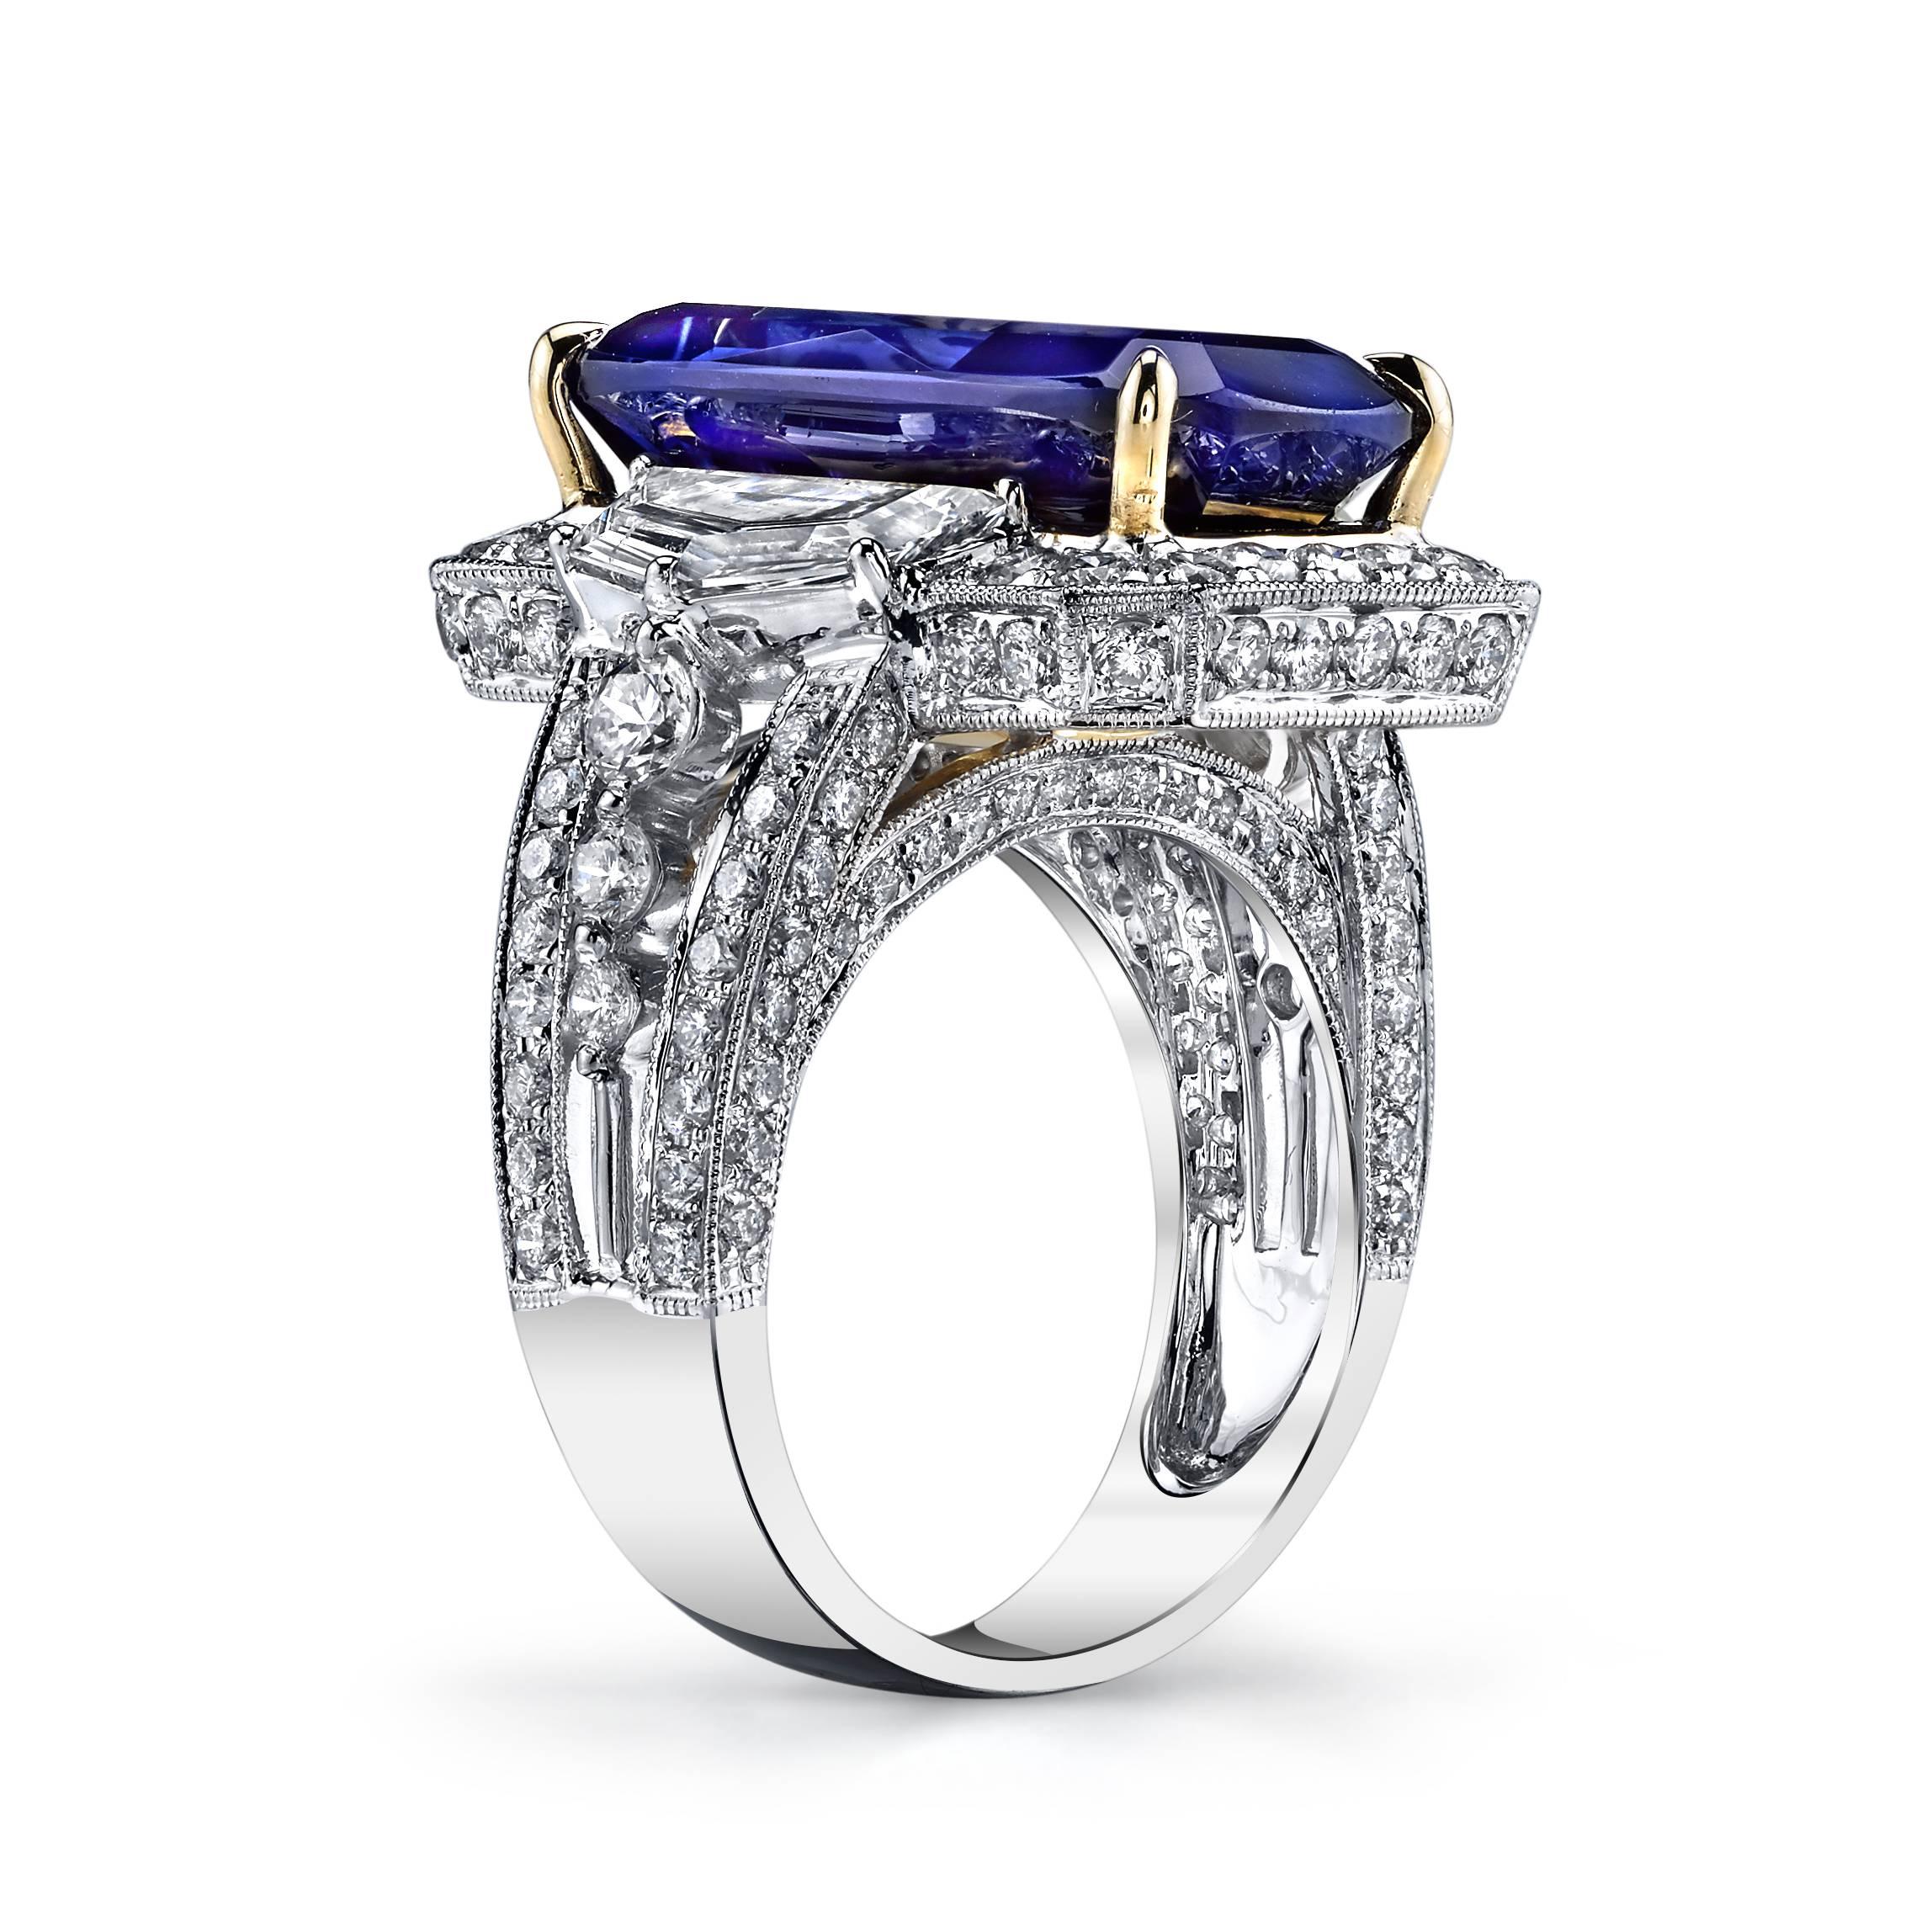 Dieser spektakuläre, detailreiche Ring enthält einen 17-karätigen violettblauen Tansanit in Top-Edelsteinqualität, der mit zwei trapezförmigen Diamanten besetzt ist.

Der Rest des Rings besteht aus 2 Karat runden Diamanten in VS-Qualität, gefasst in